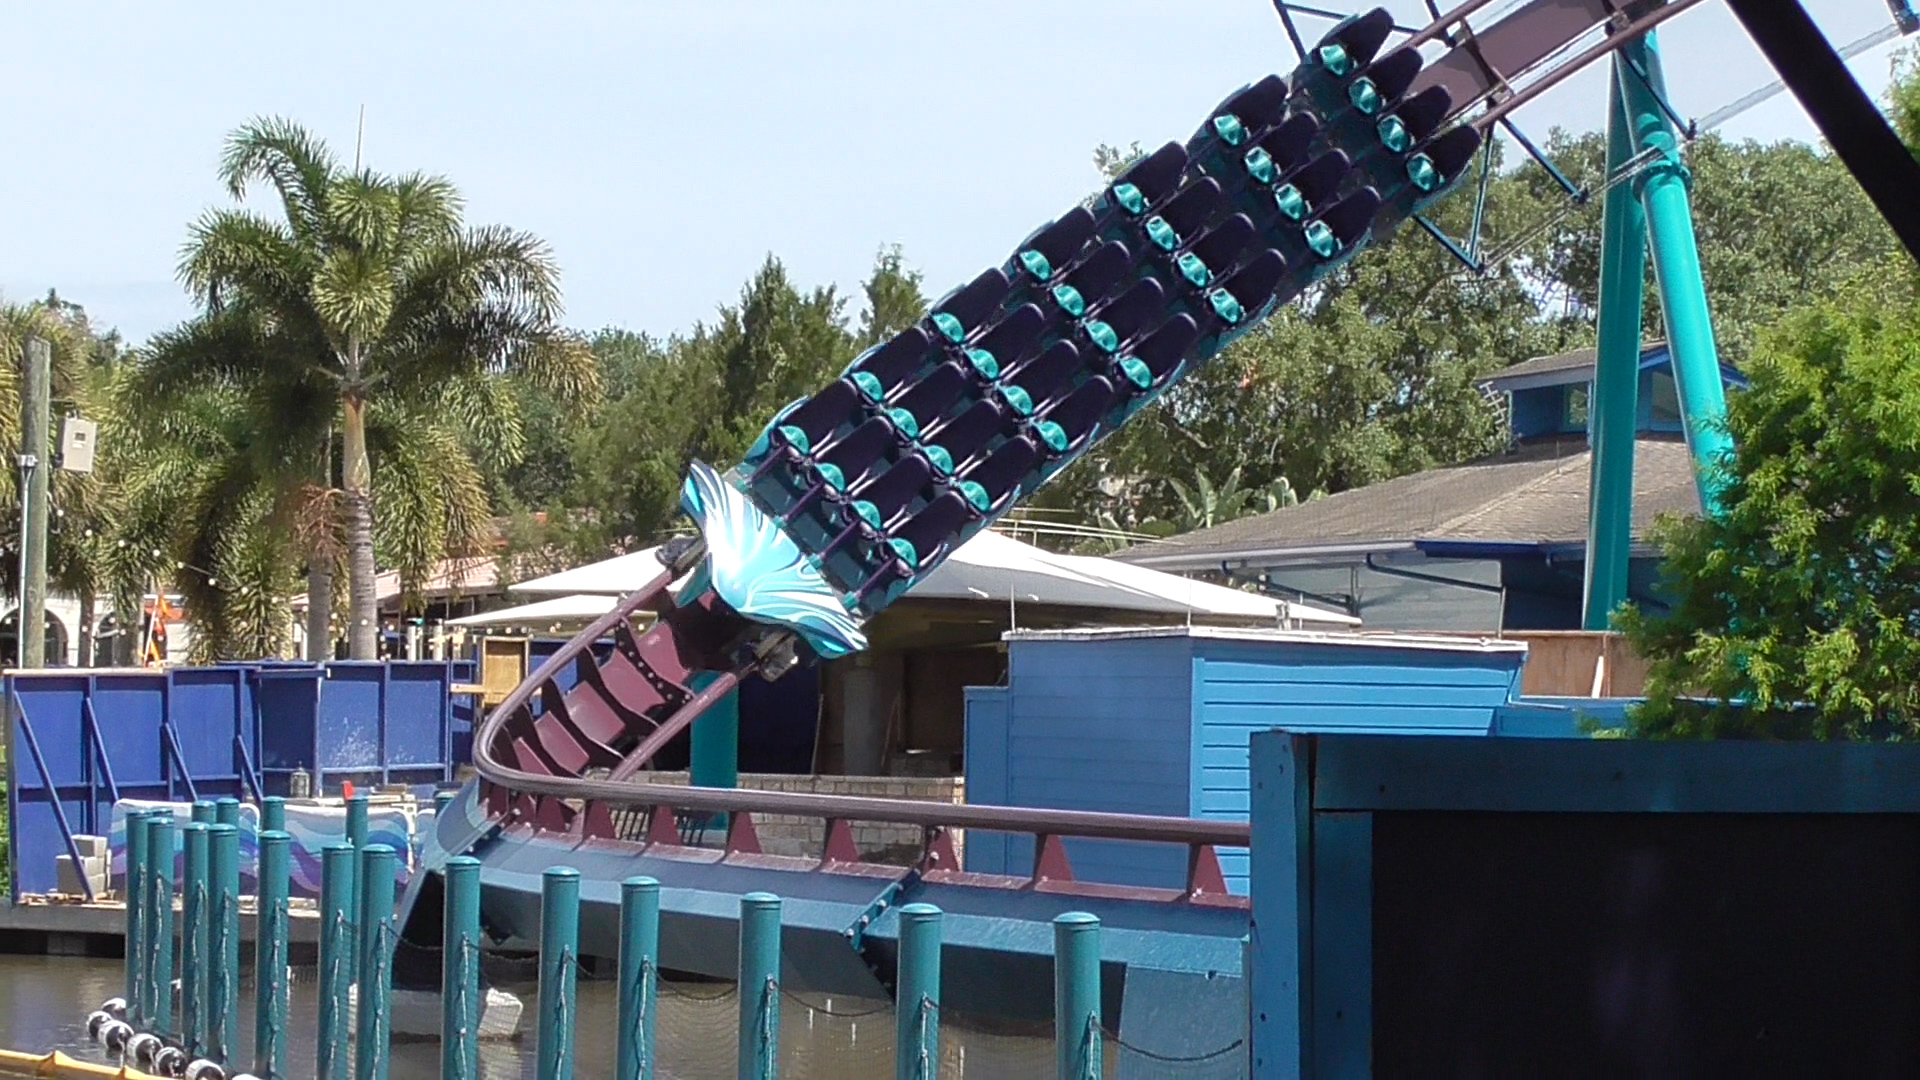 SeaWorld's new shark-themed coaster opening in June